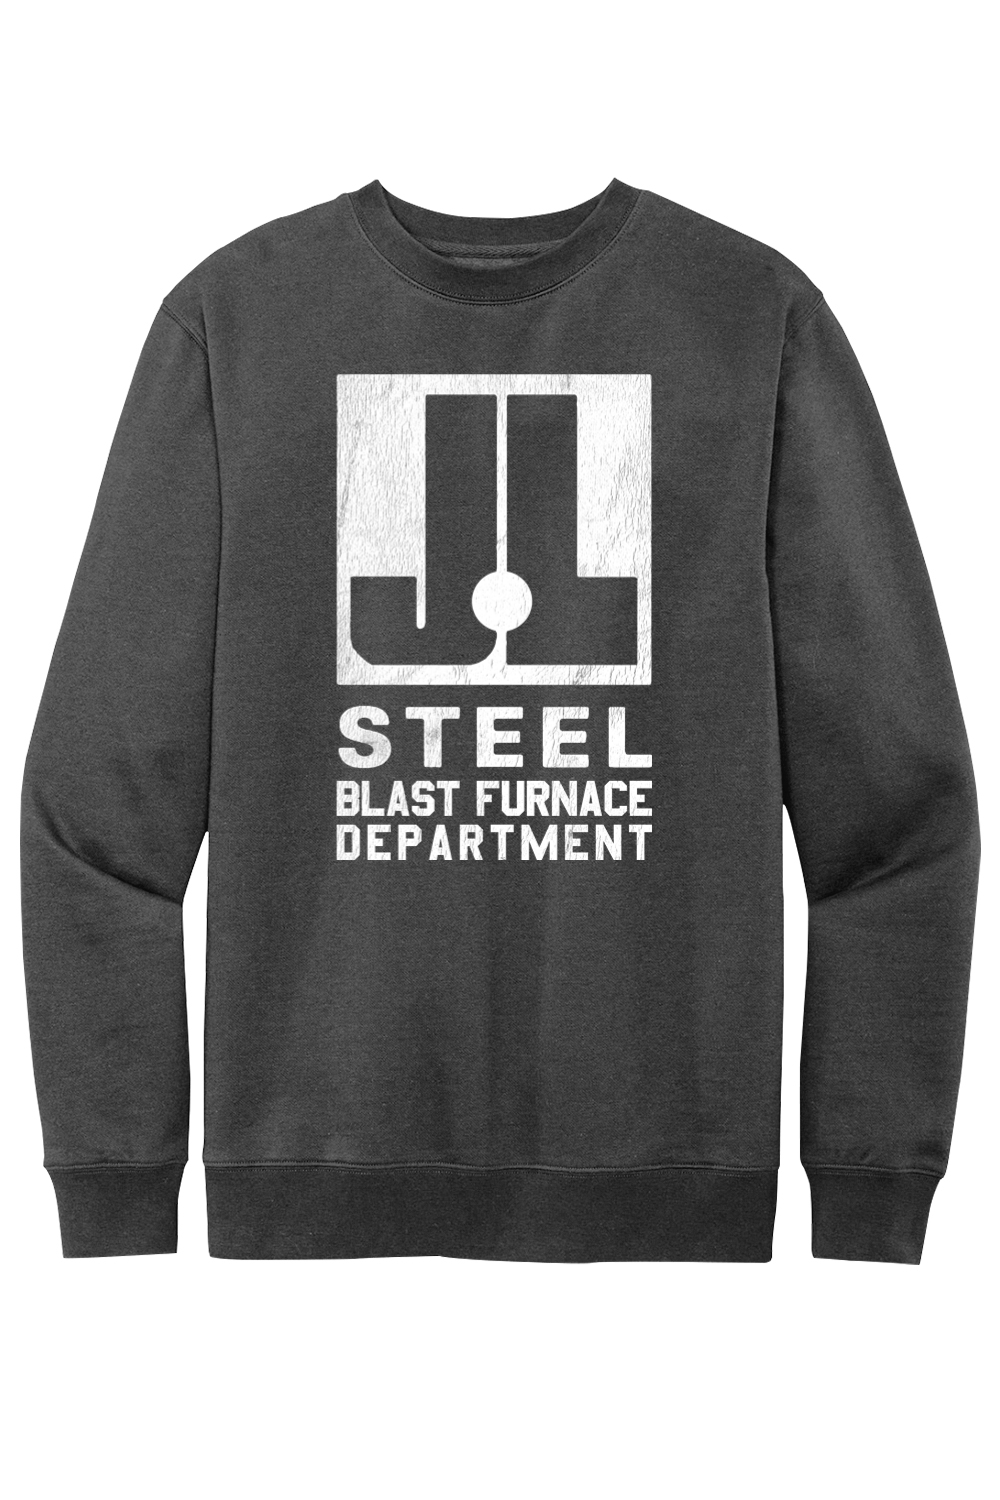 J&L Steel - Blast Furnace Department - Fleece Crew Sweatshirt - Yinzylvania